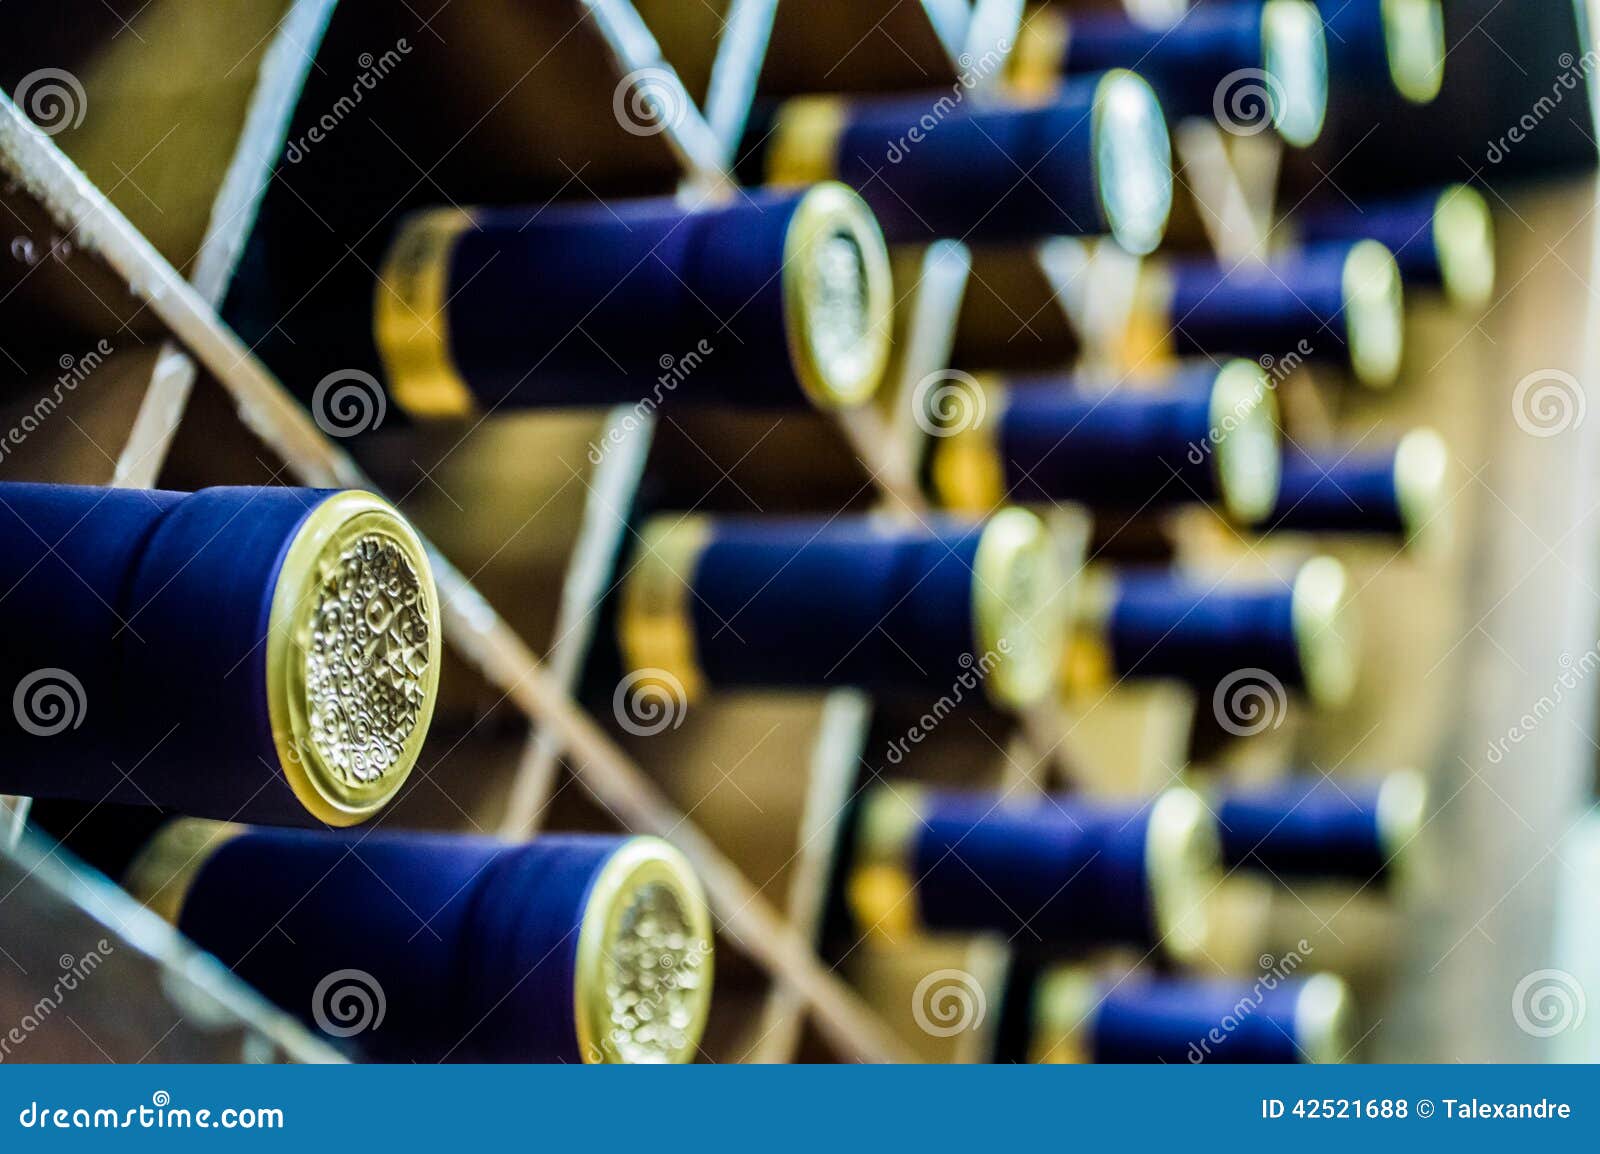 Viele Flaschen Wein mit Blau- und Goldkapseln in einem Weinkeller